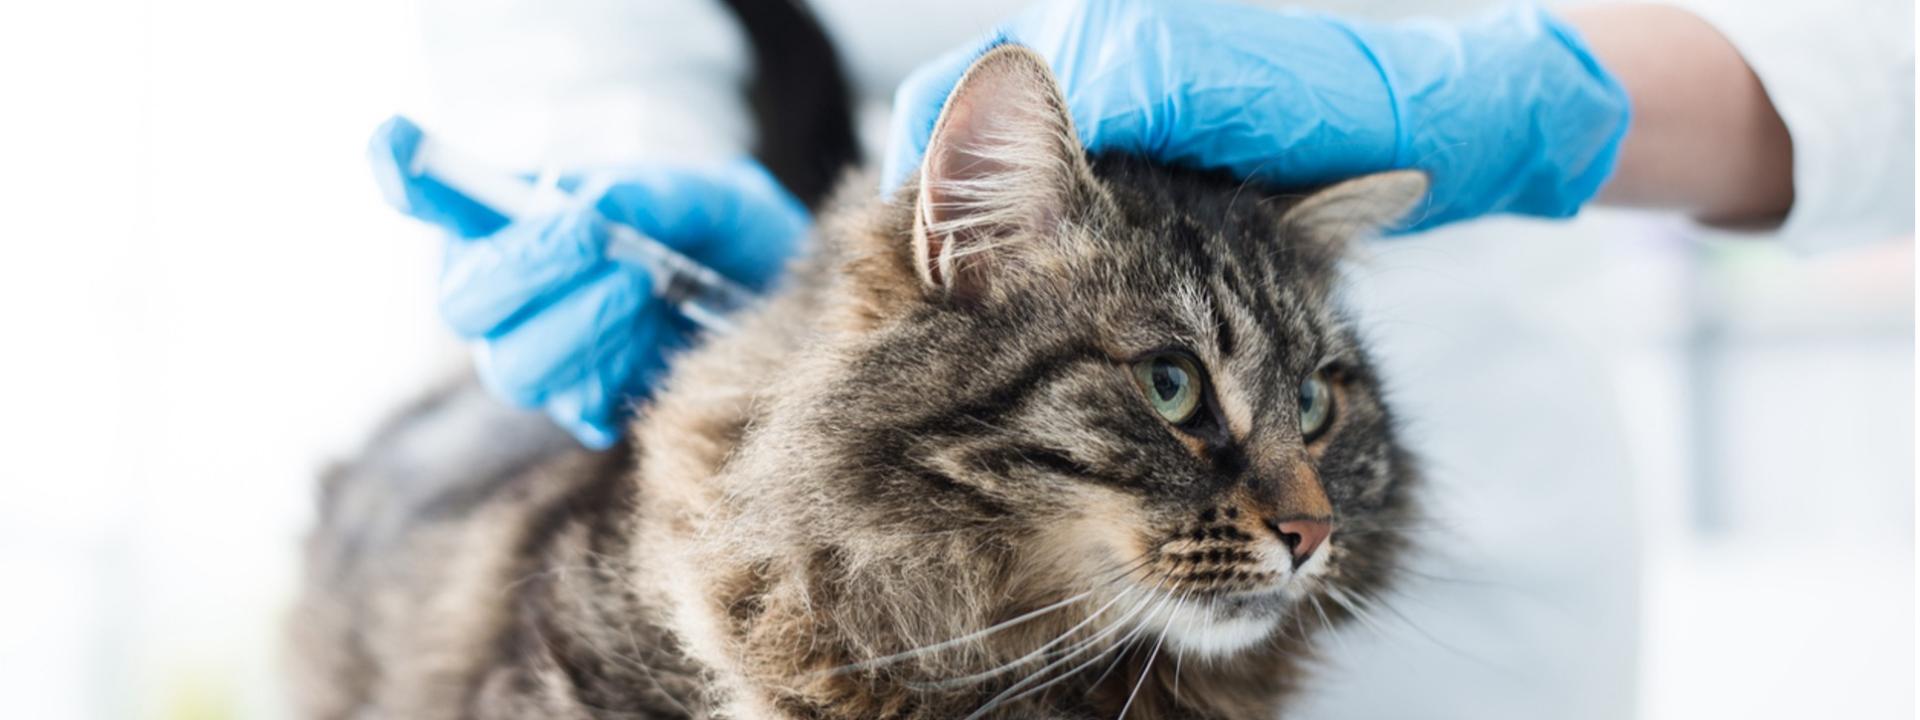 Cat receiving a vaccination